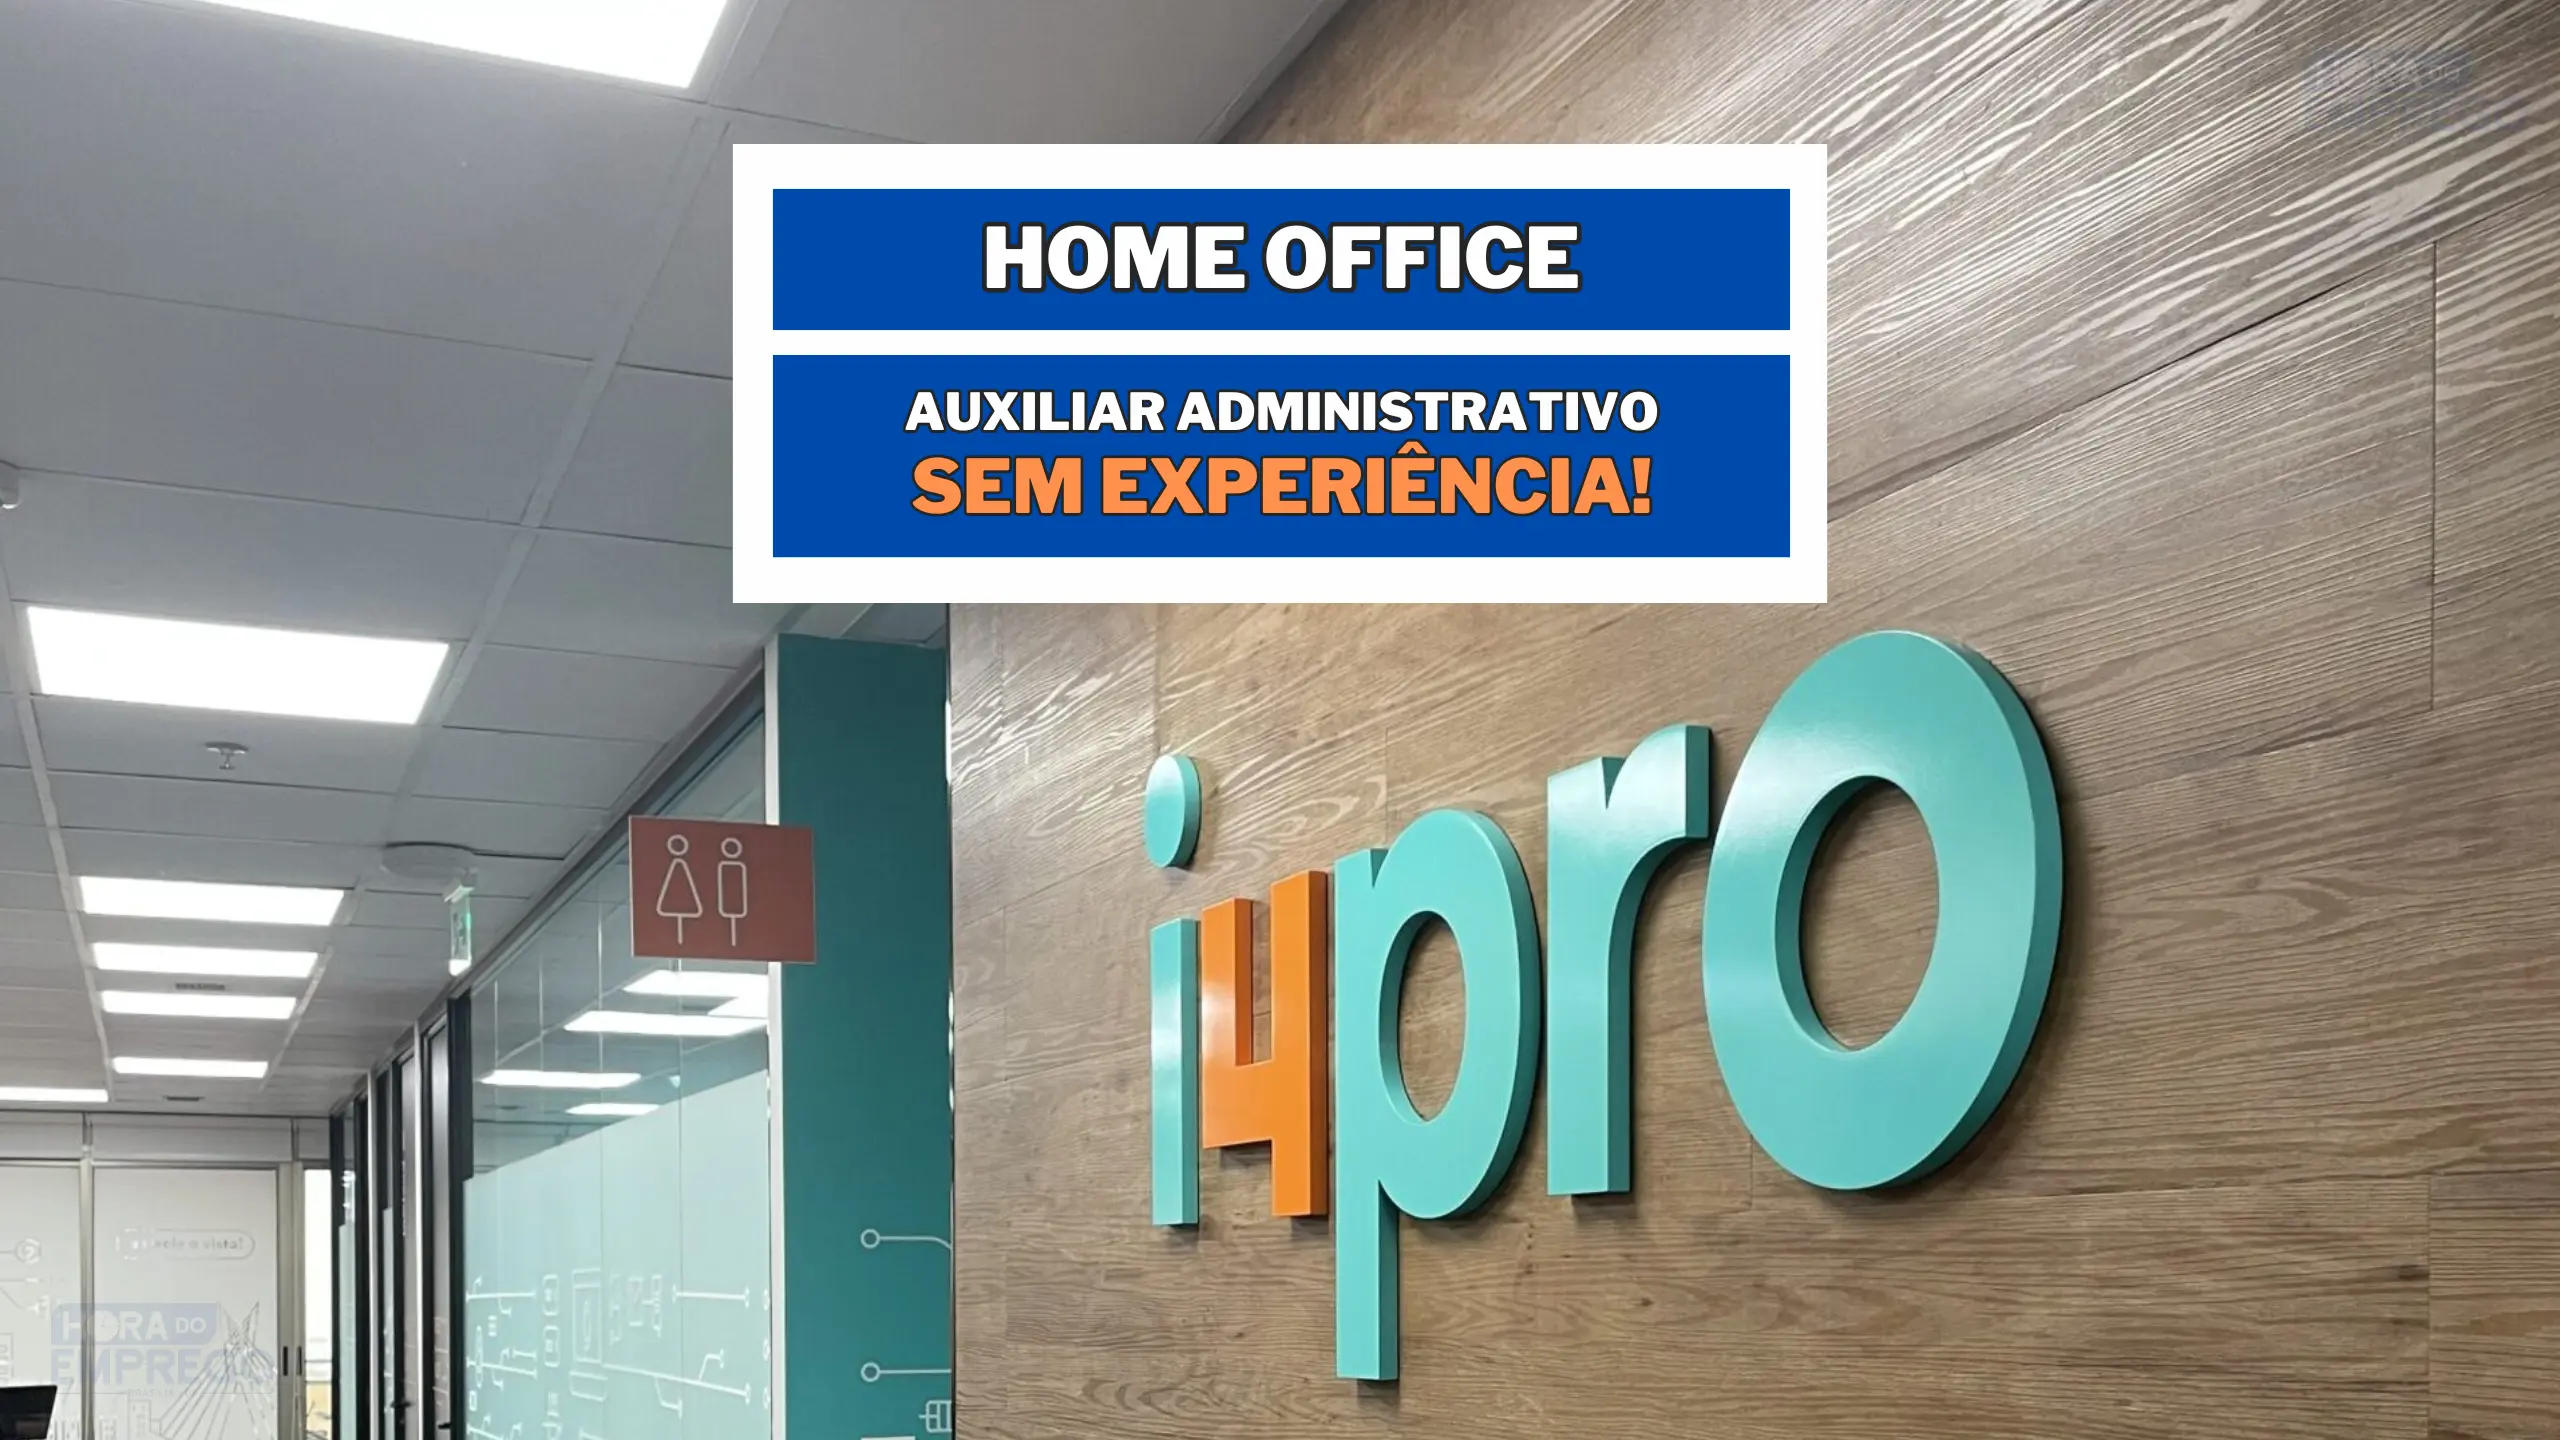 SEM EXPERIÊNCIA! i4pro contrata para HOME OFFICE profissionais Auxiliar Administrativo